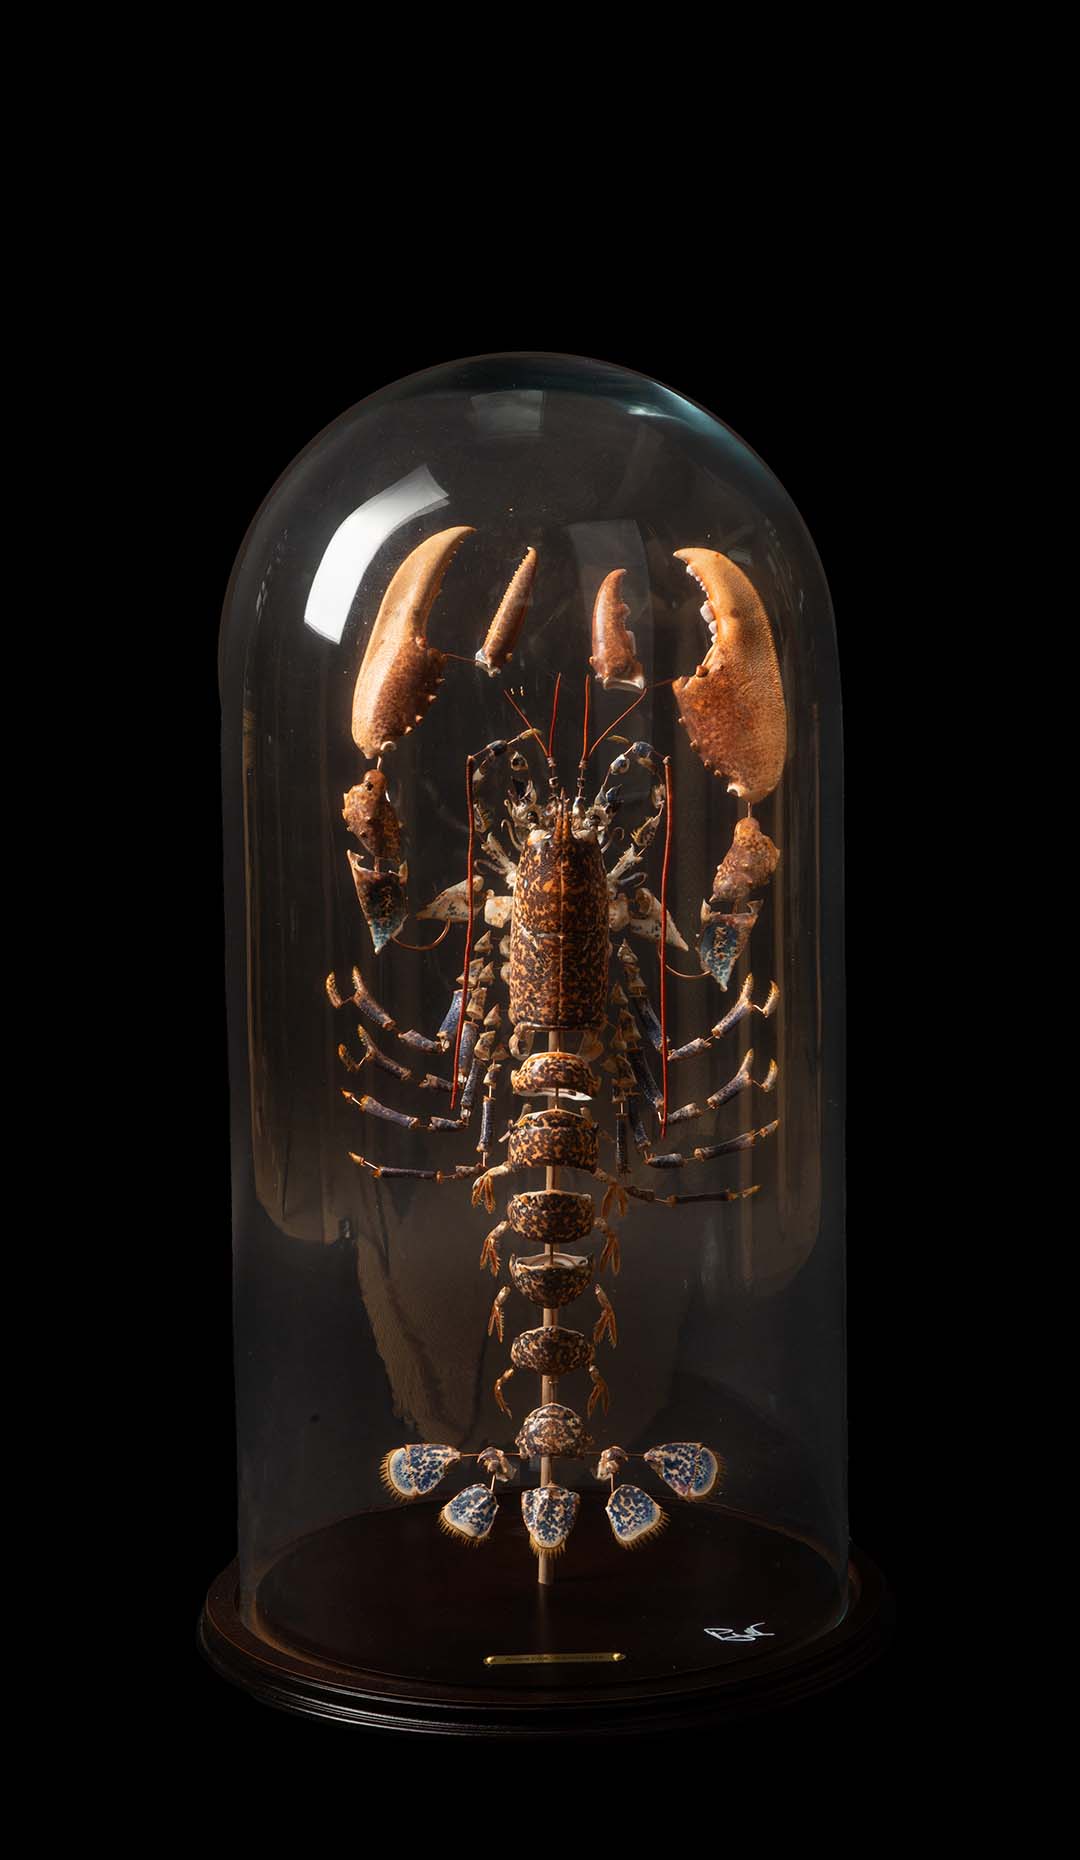 Deconstructed Lobster (Homarus Gammarus) Specimen Under Glass Dome